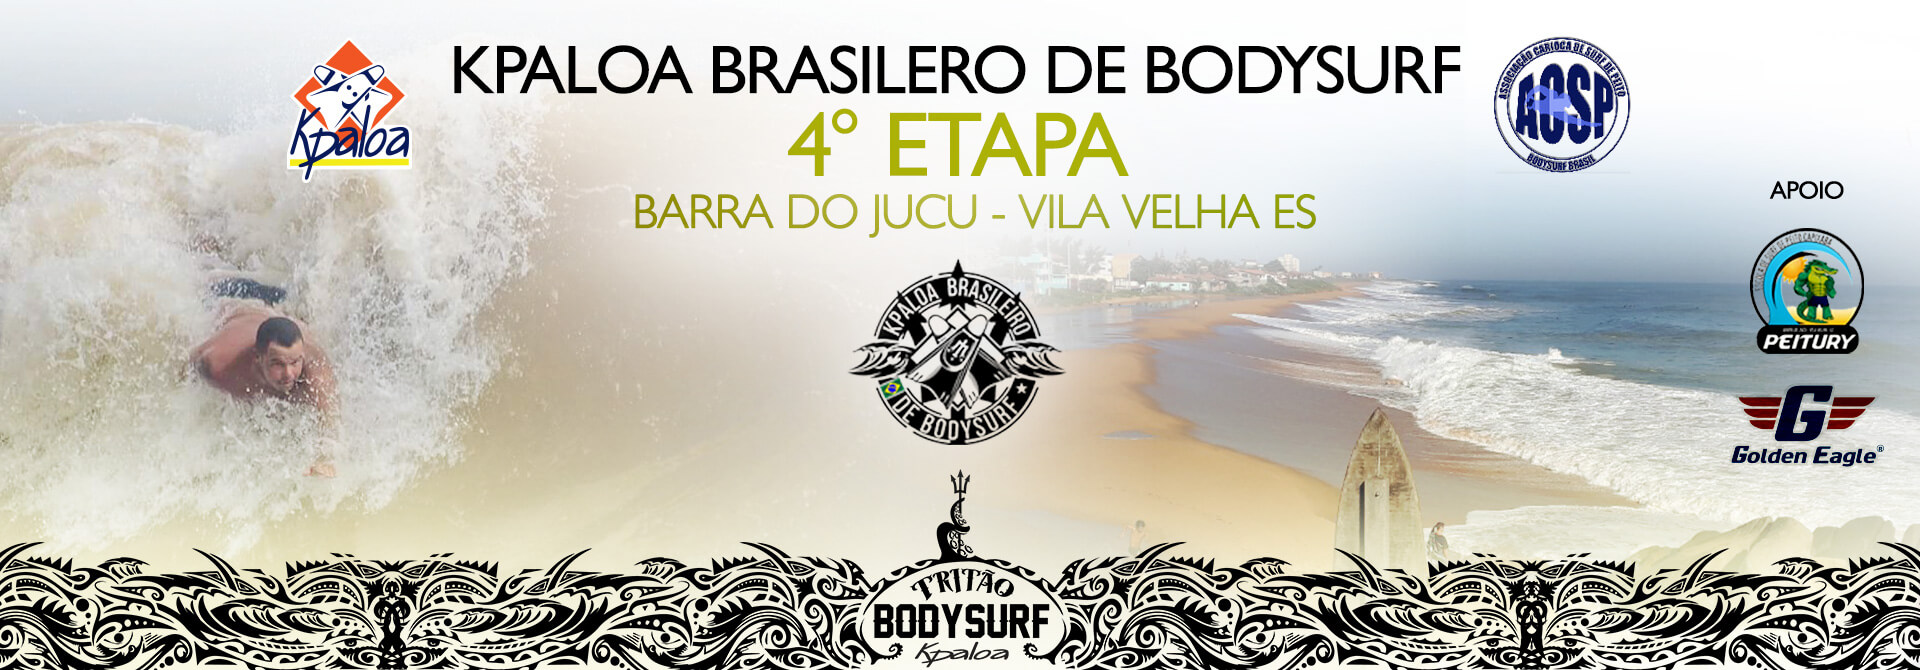 kpaloa-brasileiro-bodysurf-fpss-4-etapa-jucu